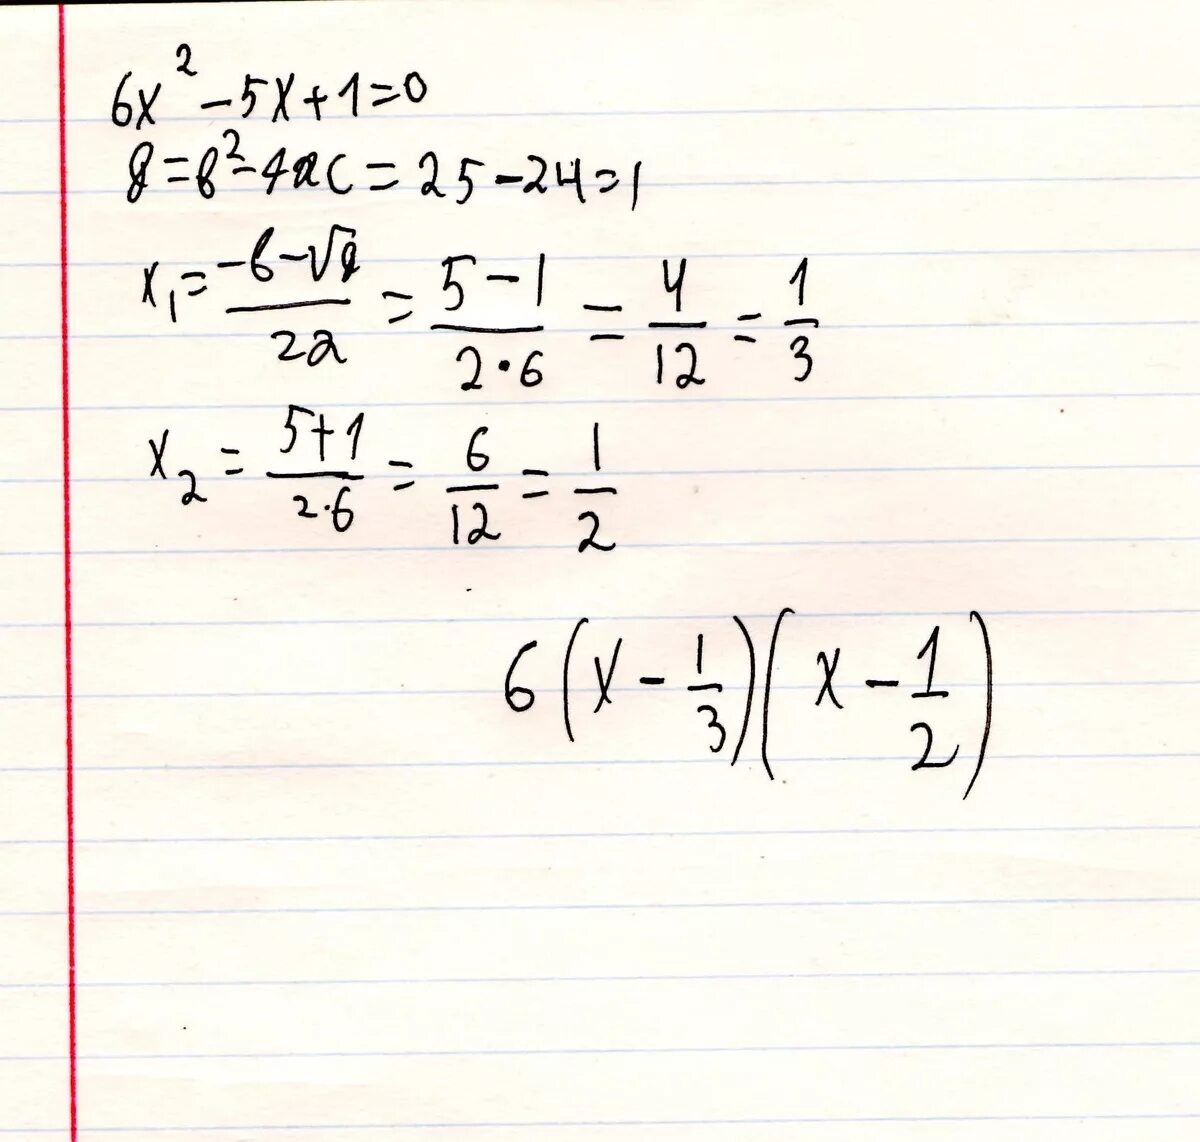 Квадратный трехчлен разложен на множители 2x. Разложите на множители квадратный трехчлен x2-5x+6. Разложите на множители квадратный трехчлен 6x2-x-2. Разложение на множители квадратный трехчлен x^2-x-6. Разложите на множители квадратный трехчлен x2-5x+6 через дискриминант.